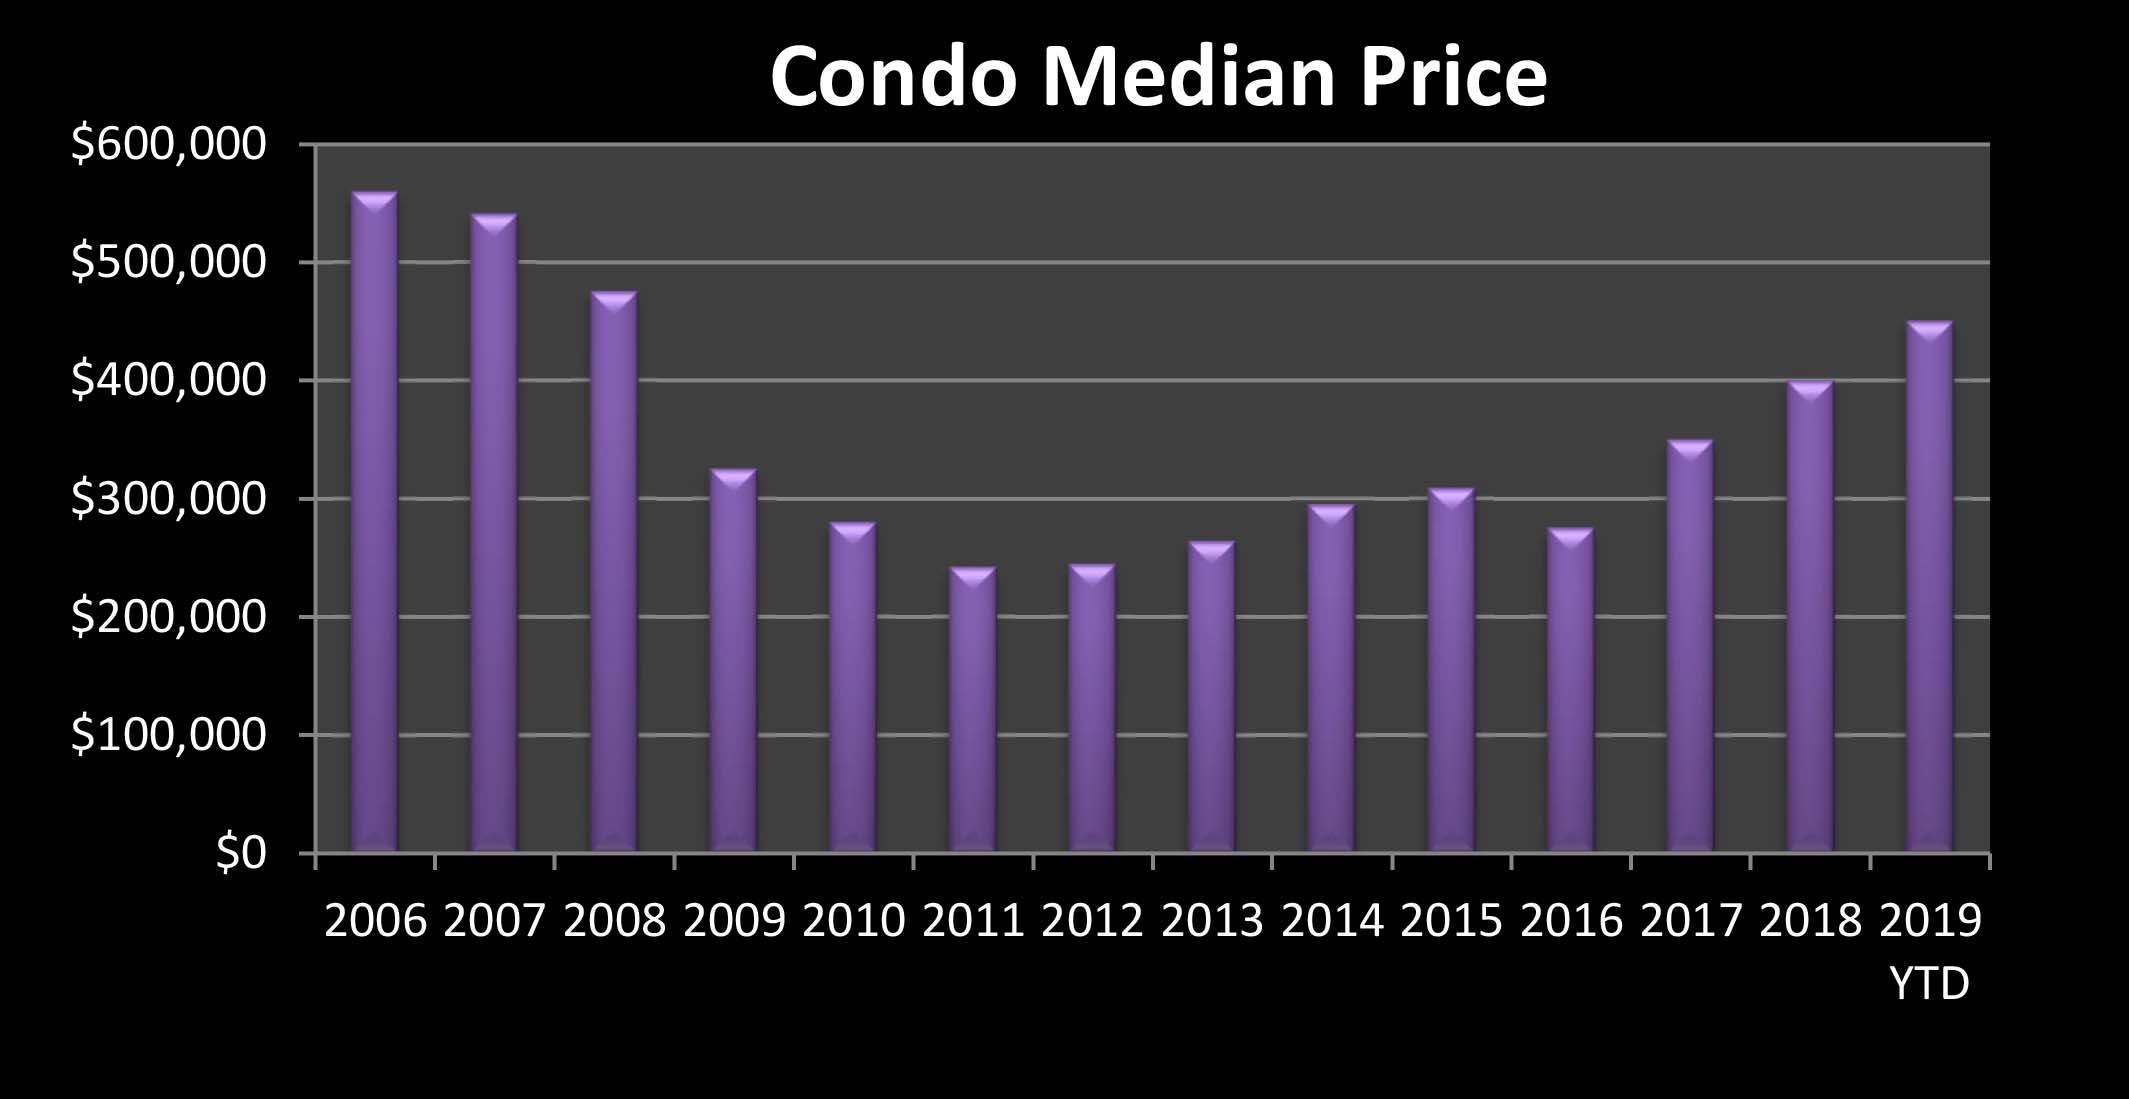 Condo prices 2019